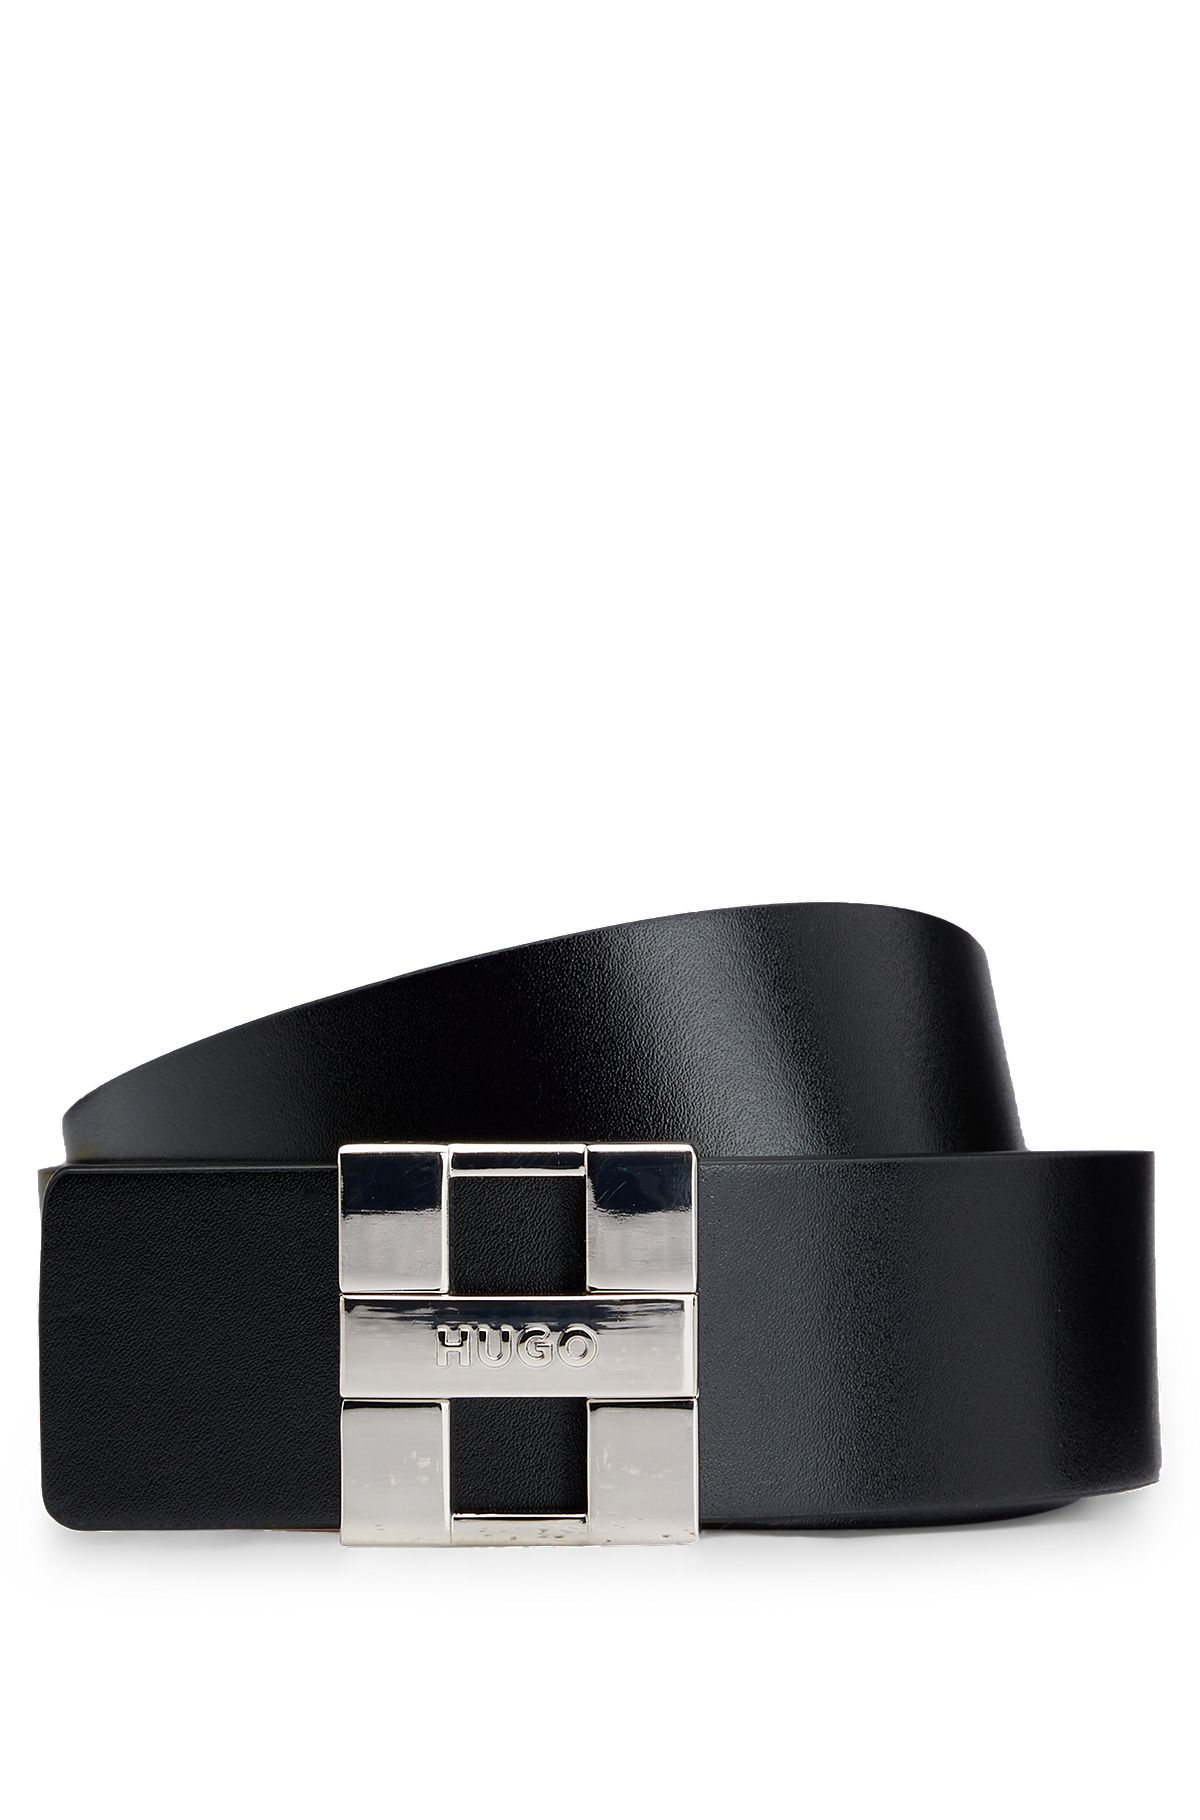 Cinturón reversible de piel italiana con hebilla con placa de la marca, Negro